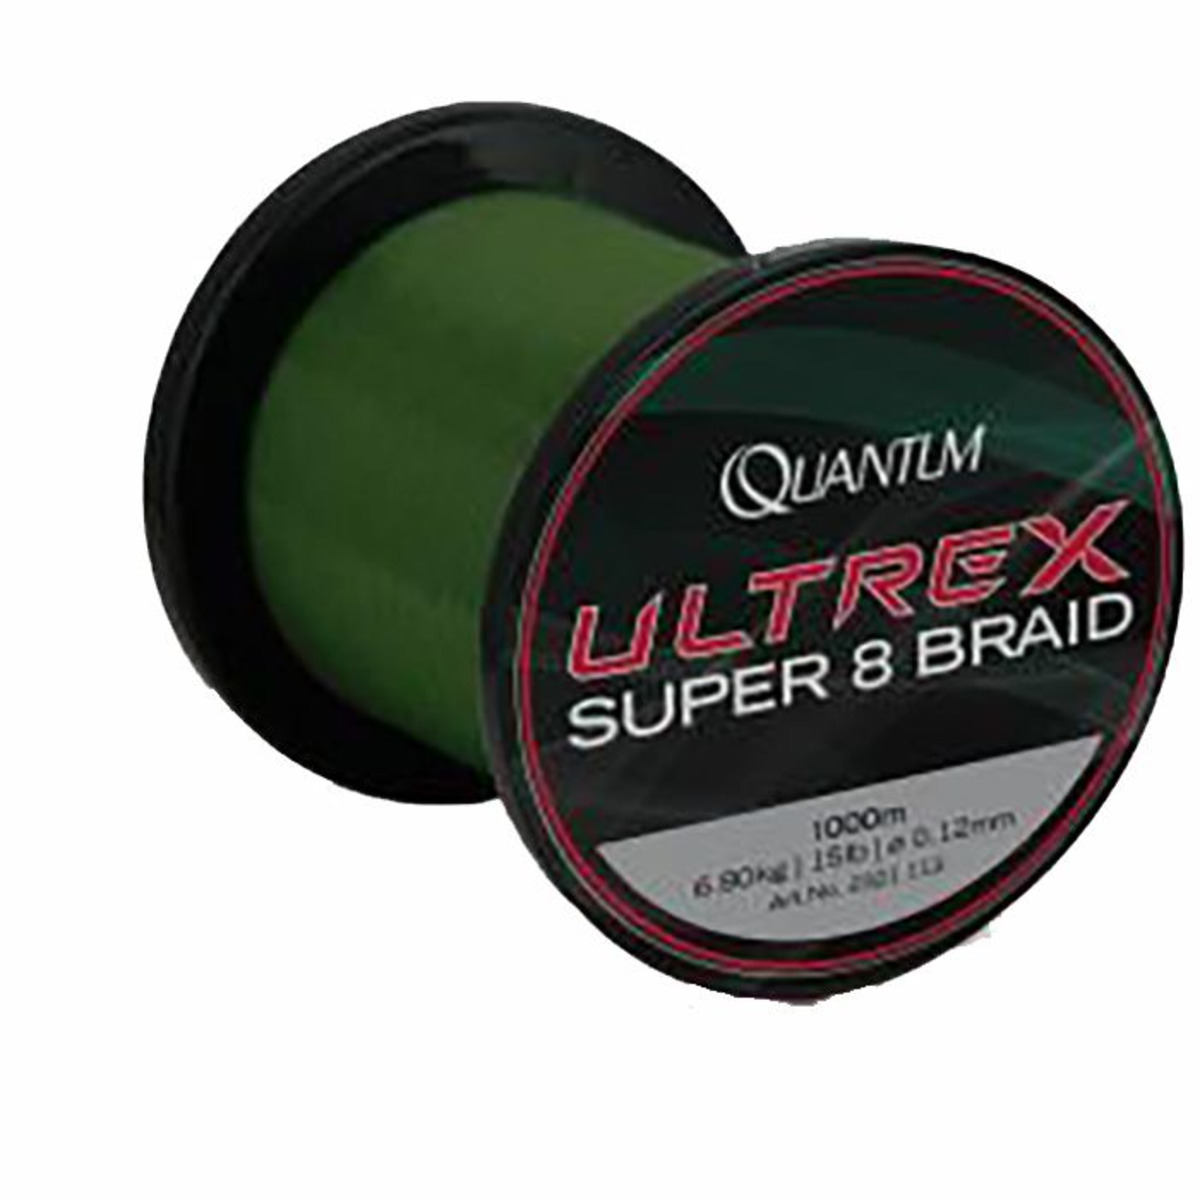 Quantum Ultrex Super 8 Braid Green 1000 M - 0.17 mm - 1000 m